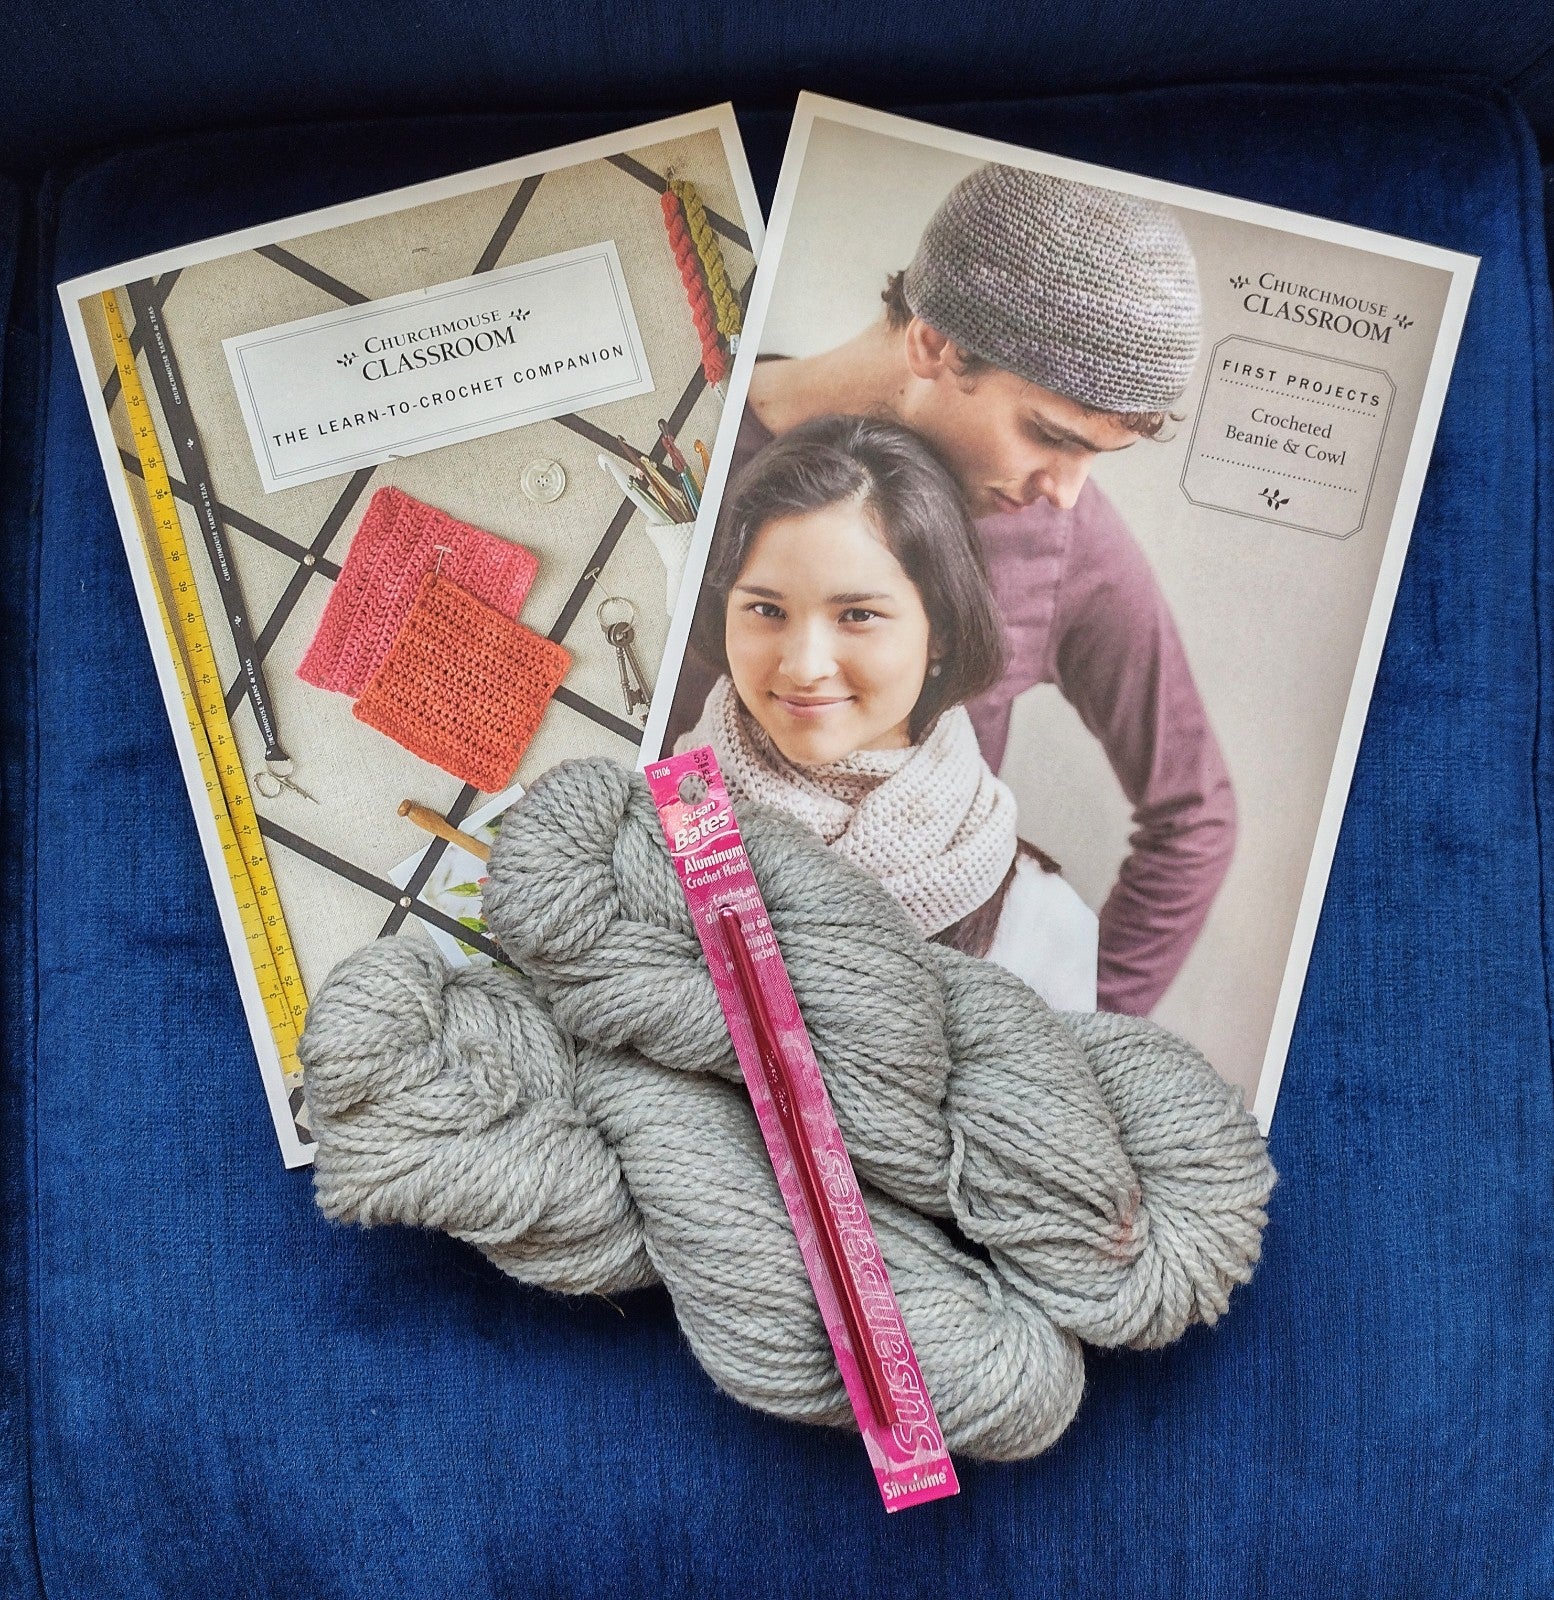 Learn to Crochet Kit